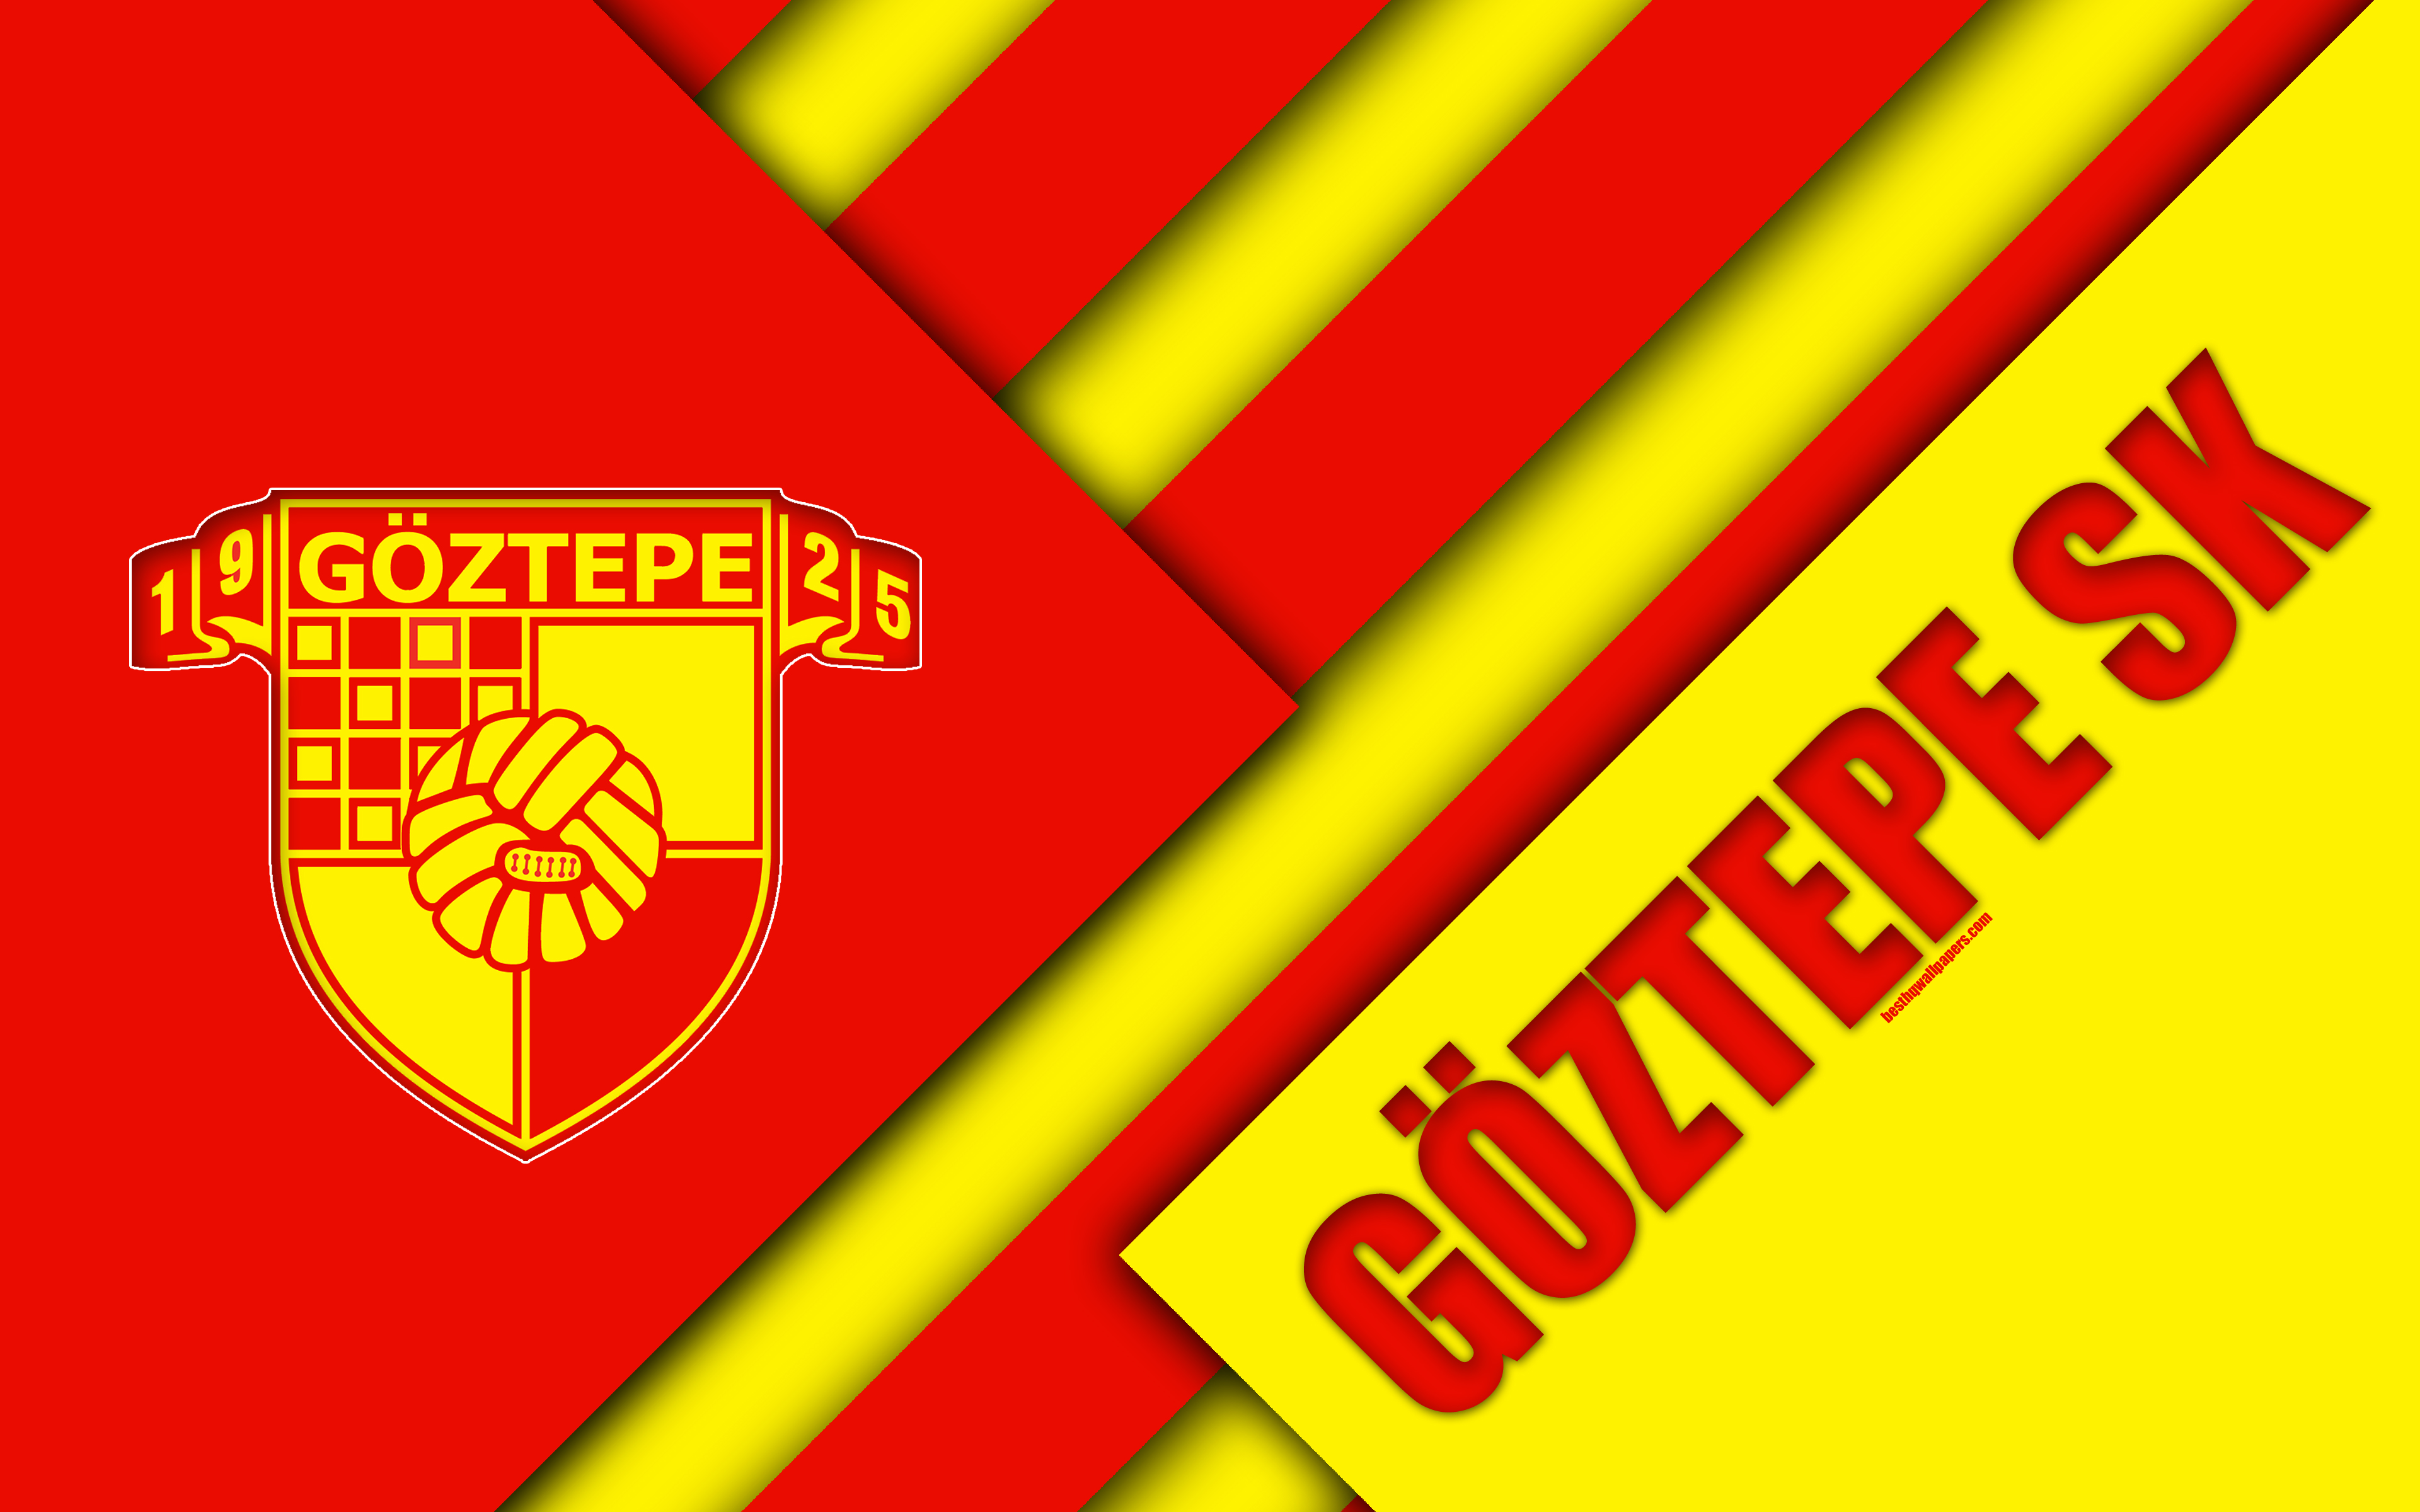 Download wallpaper Göztepe SK, emblem, 4k, material design, logo